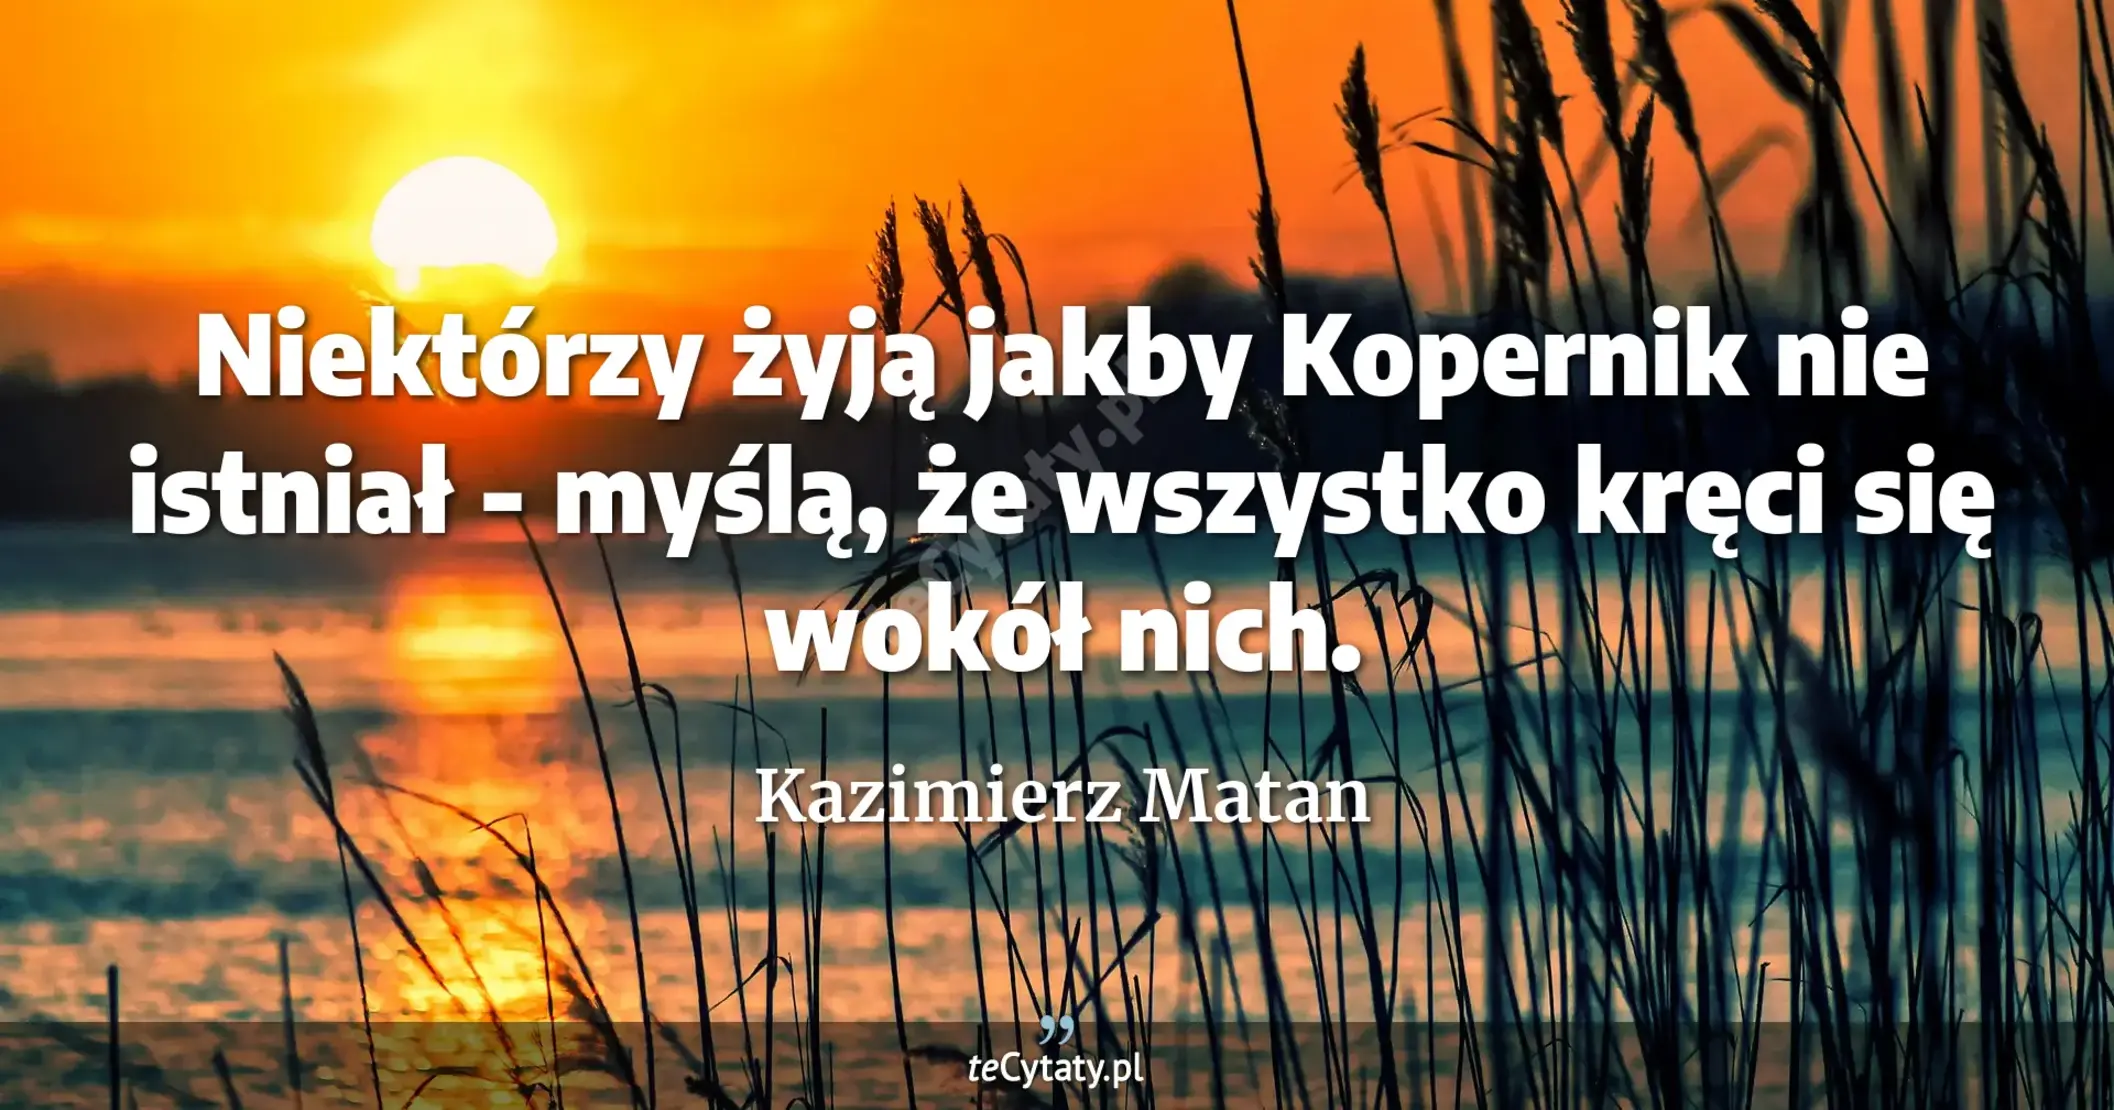 Niektórzy żyją jakby Kopernik nie istniał - myślą, że wszystko kręci się wokół nich. - Kazimierz Matan